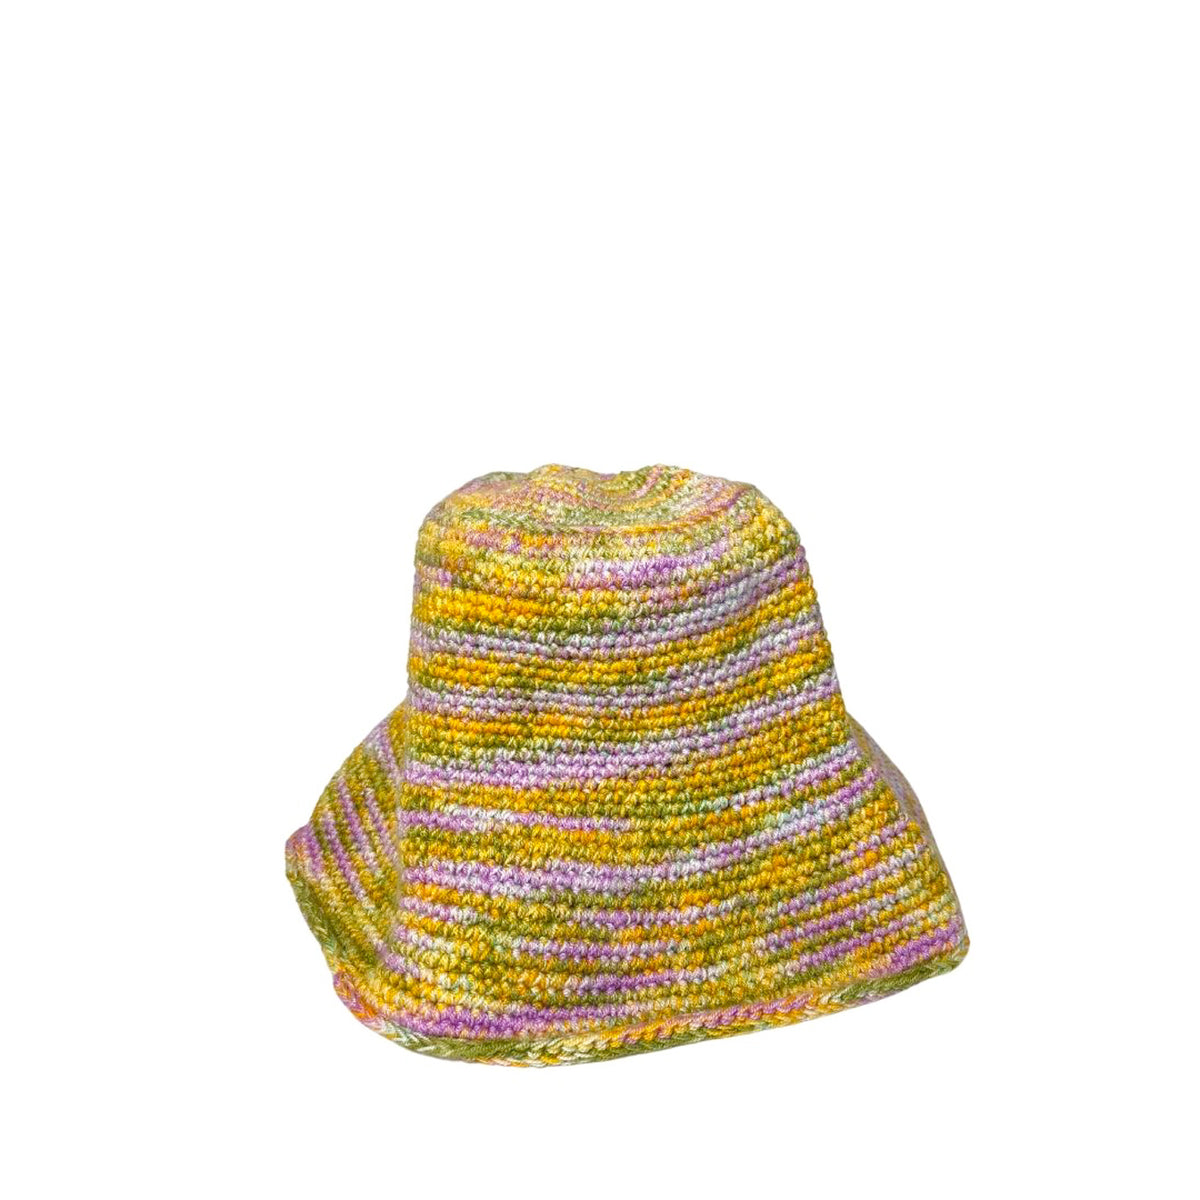 Blue Crochet Bucket Hat – Soraya Hennessy